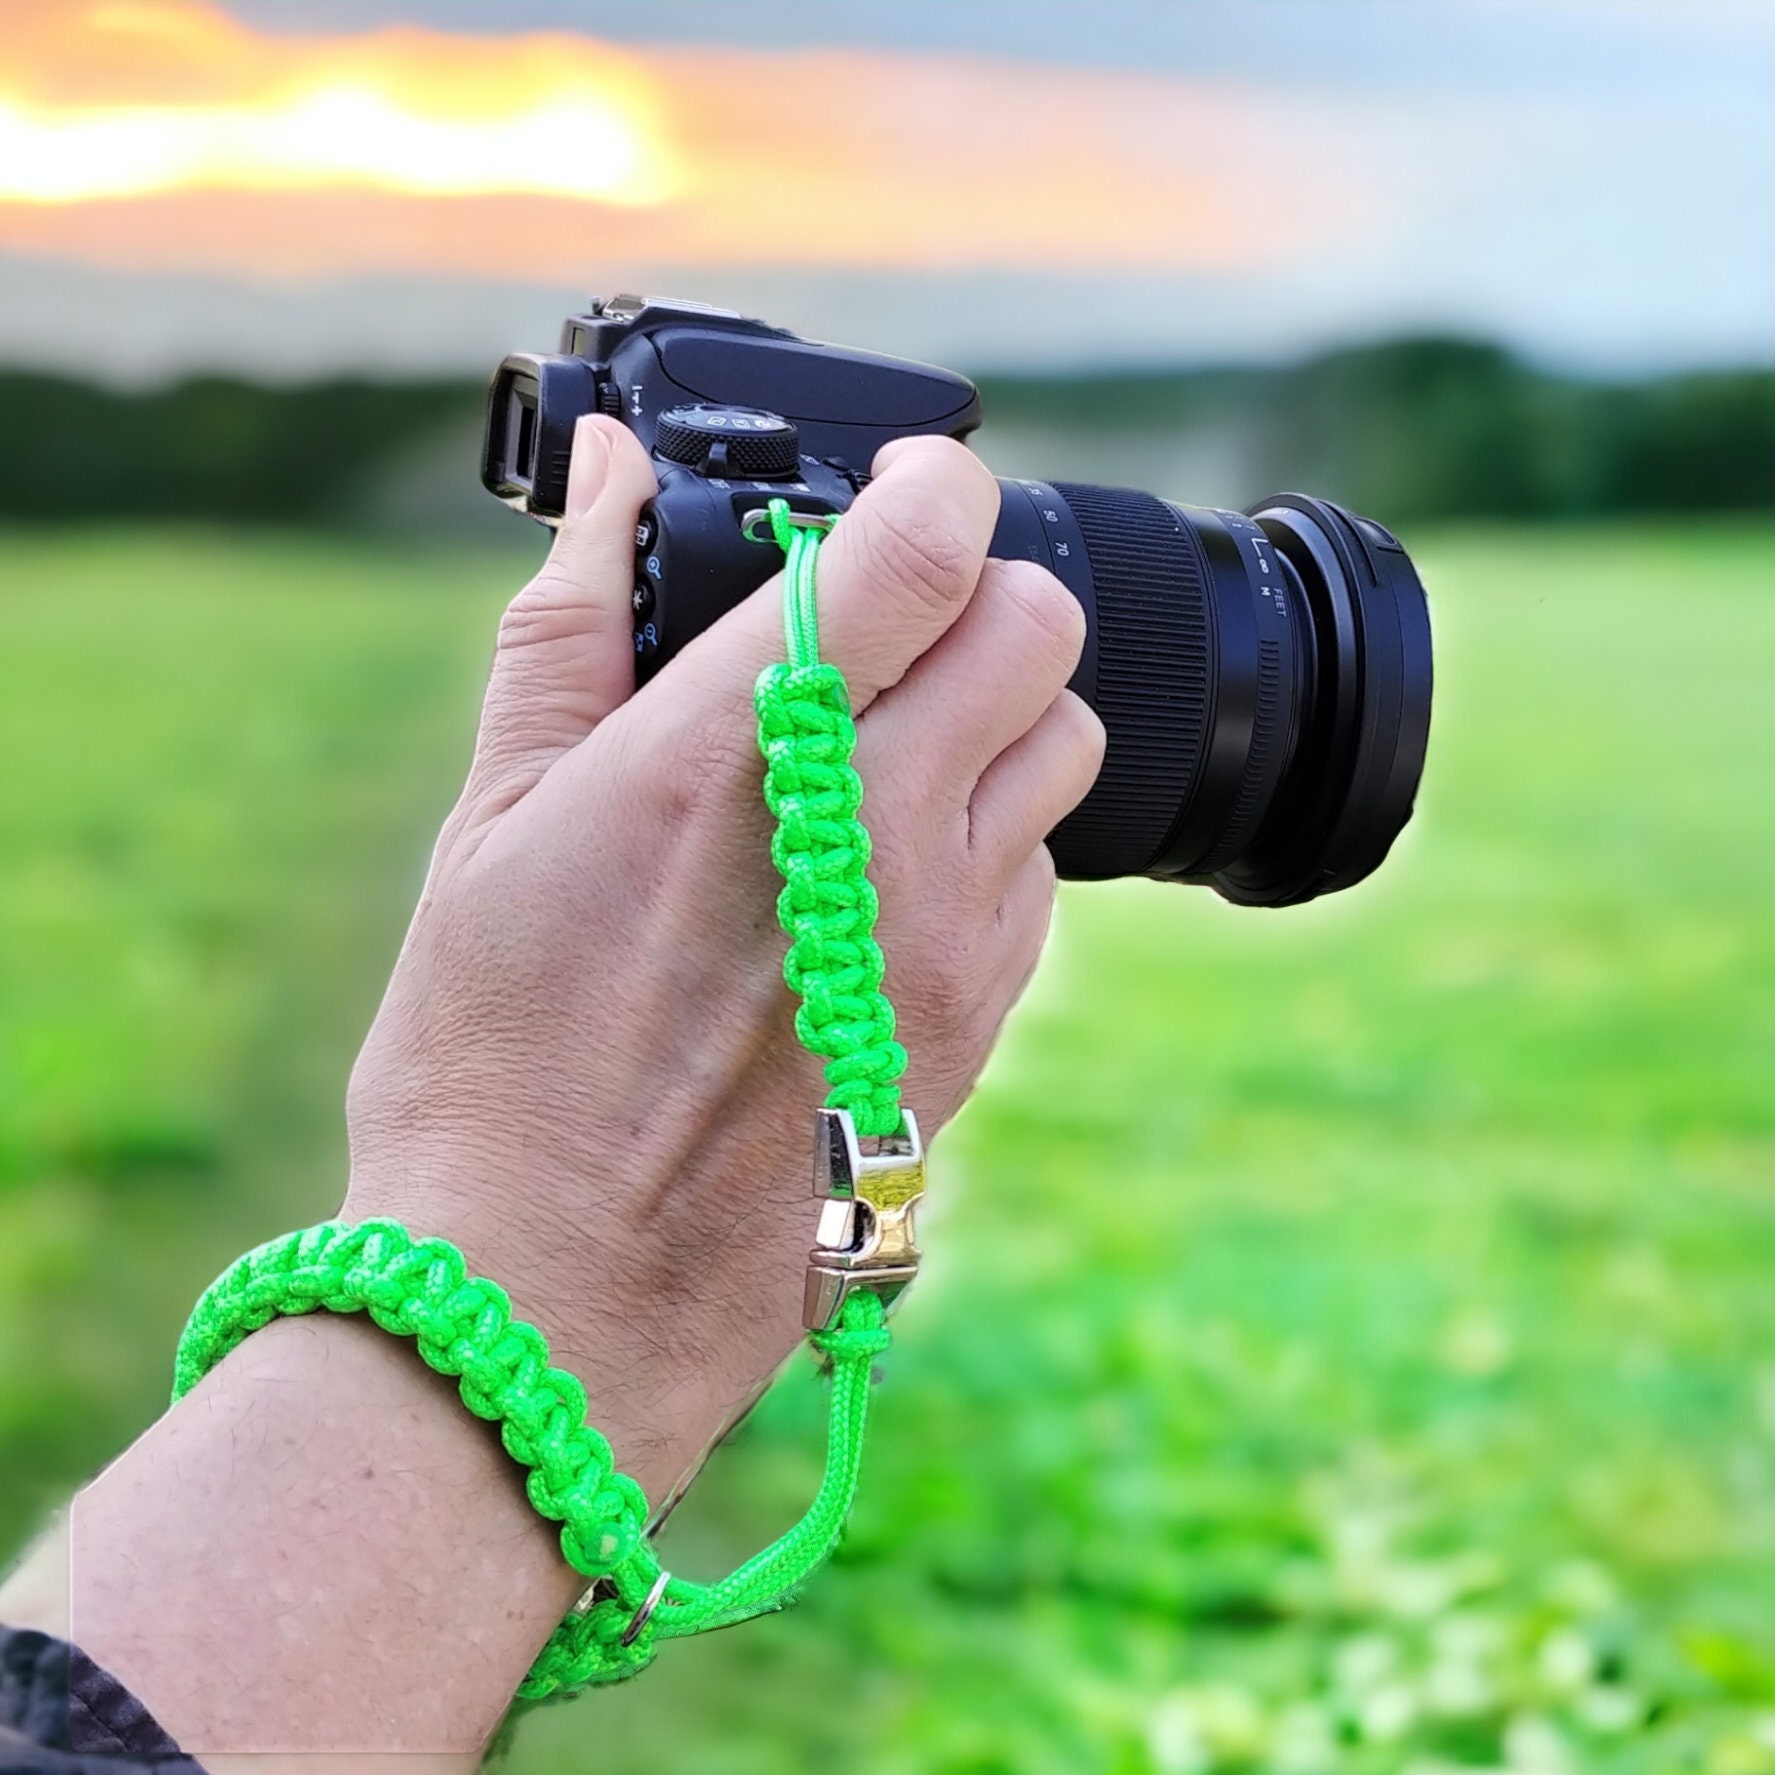 Kamera-Handschlaufe /Kameragurt /Kameraschlaufe geknotet aus Parachute Cord (Fallschirmschnur) mit Klick-Schnellverschluß / Farbe Neon Grün